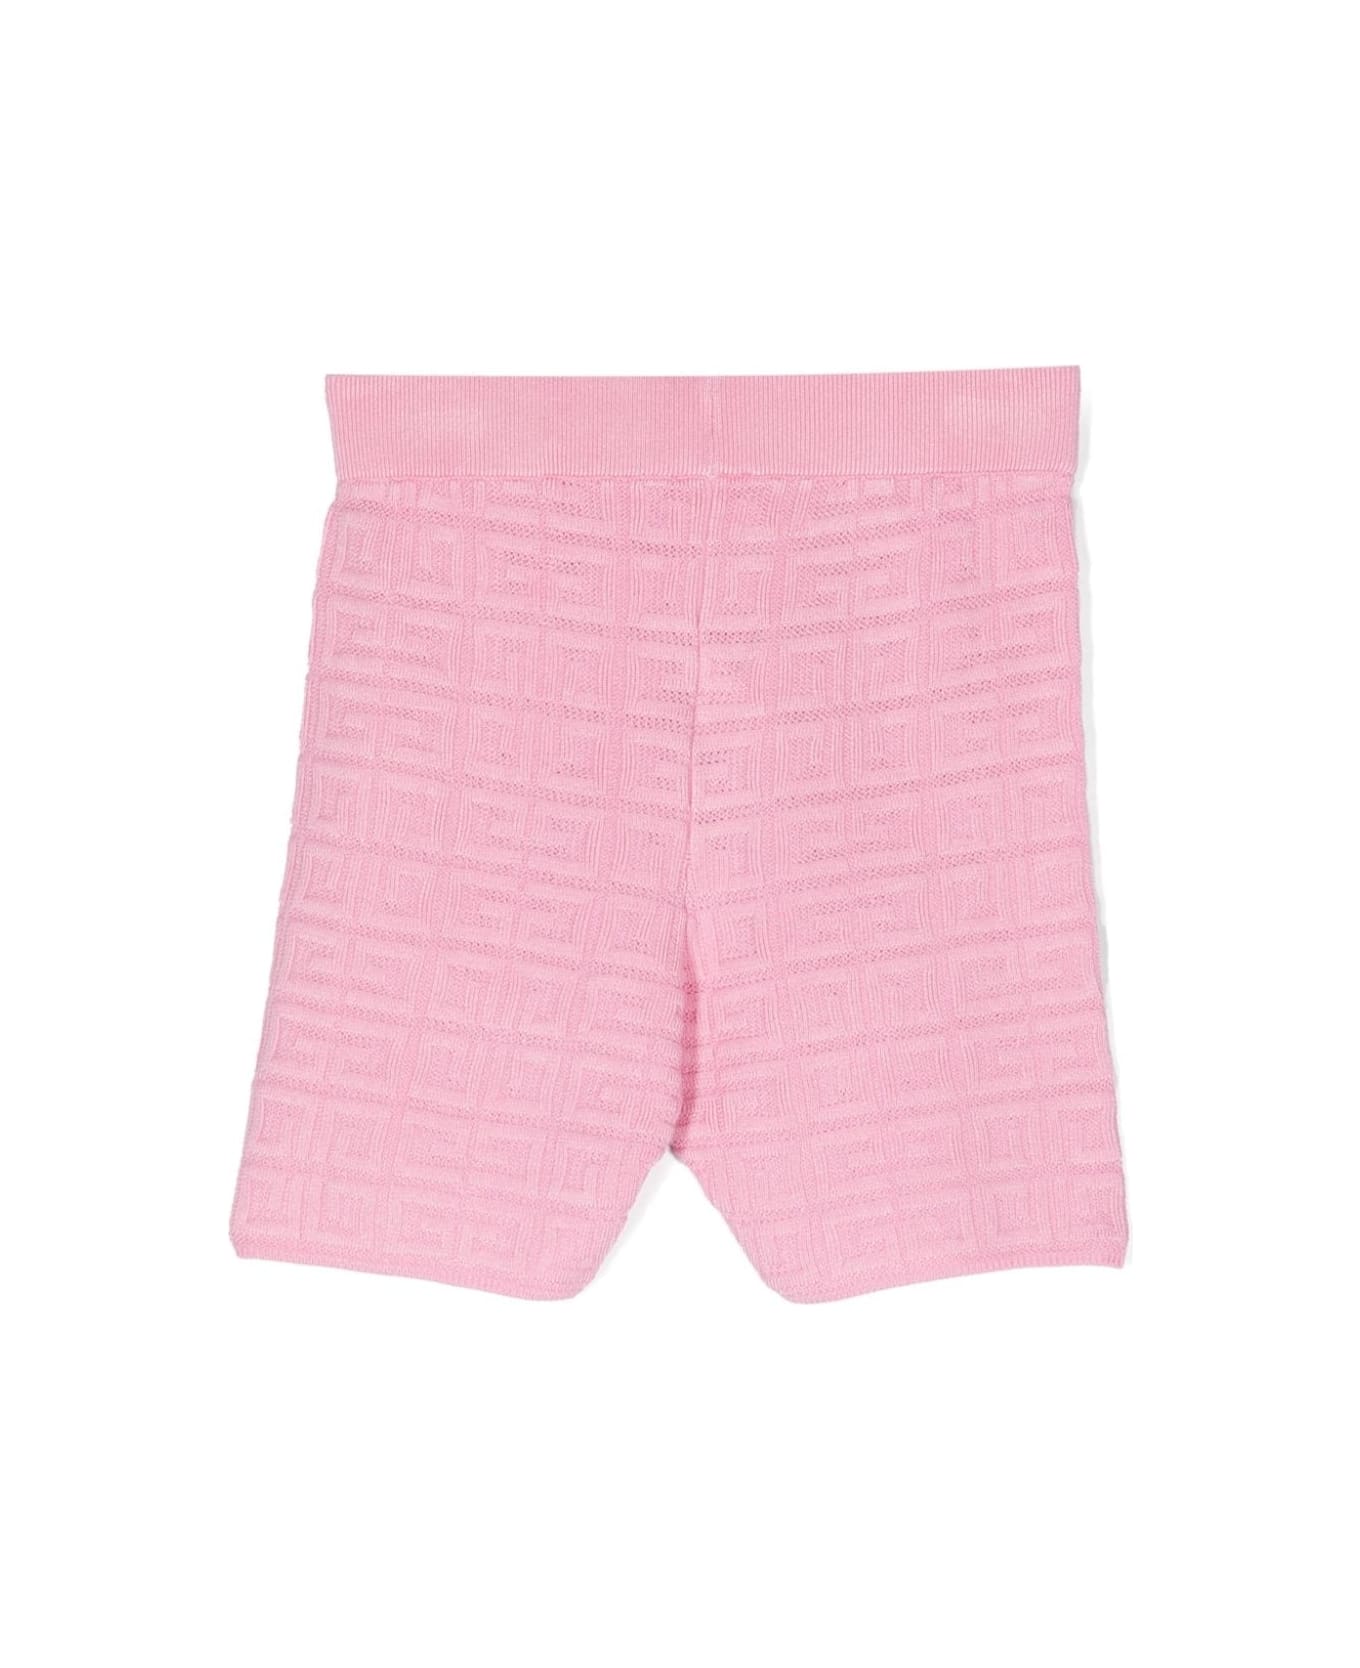 Givenchy Shorts With Jacquard Motif - Pink